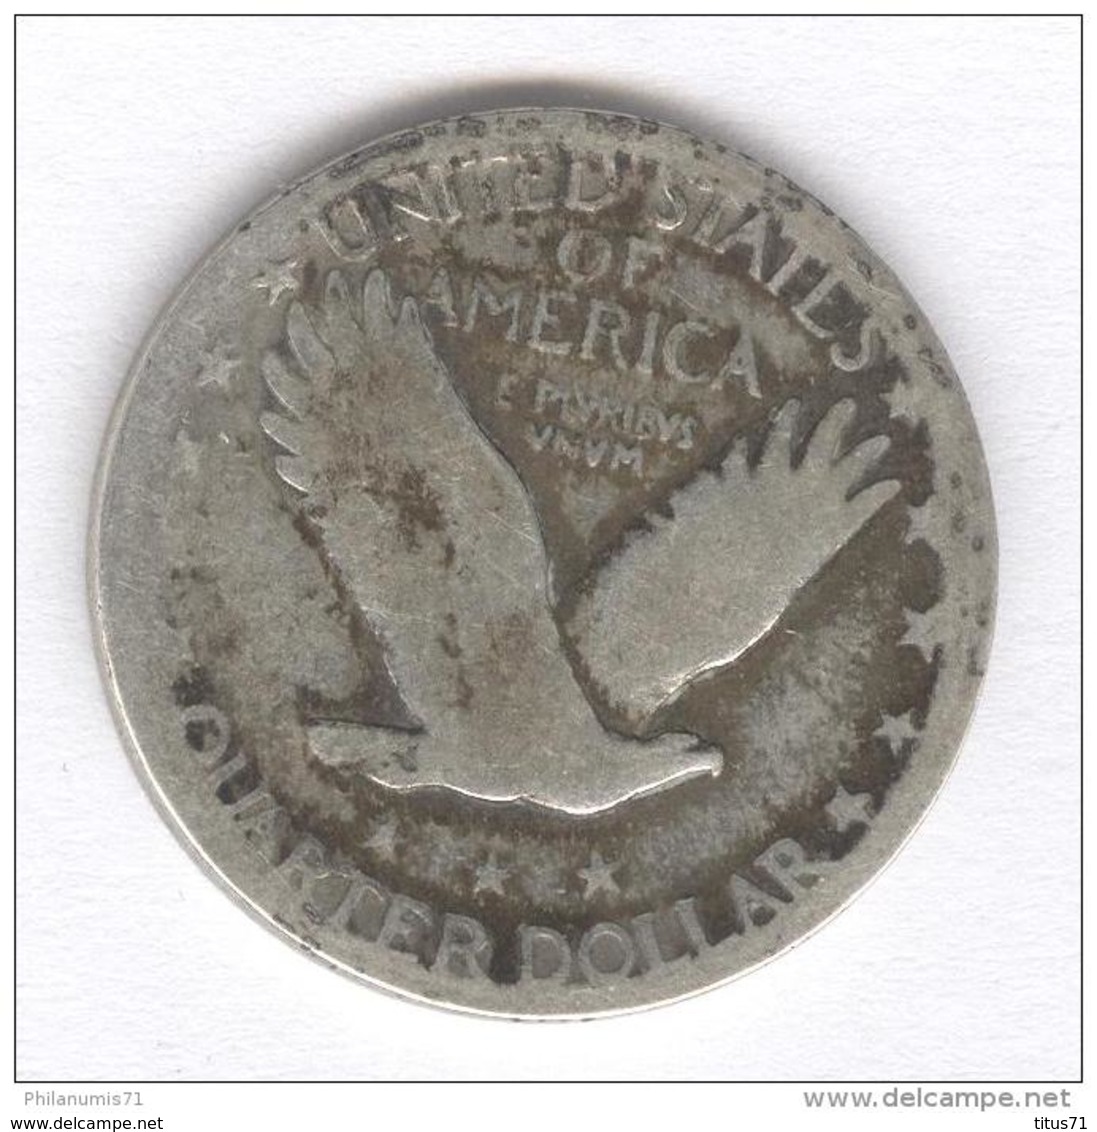 Quarter Etats Unis / United States 1917-1924 - 1916-1930: Standing Liberty (Liberté Debout)